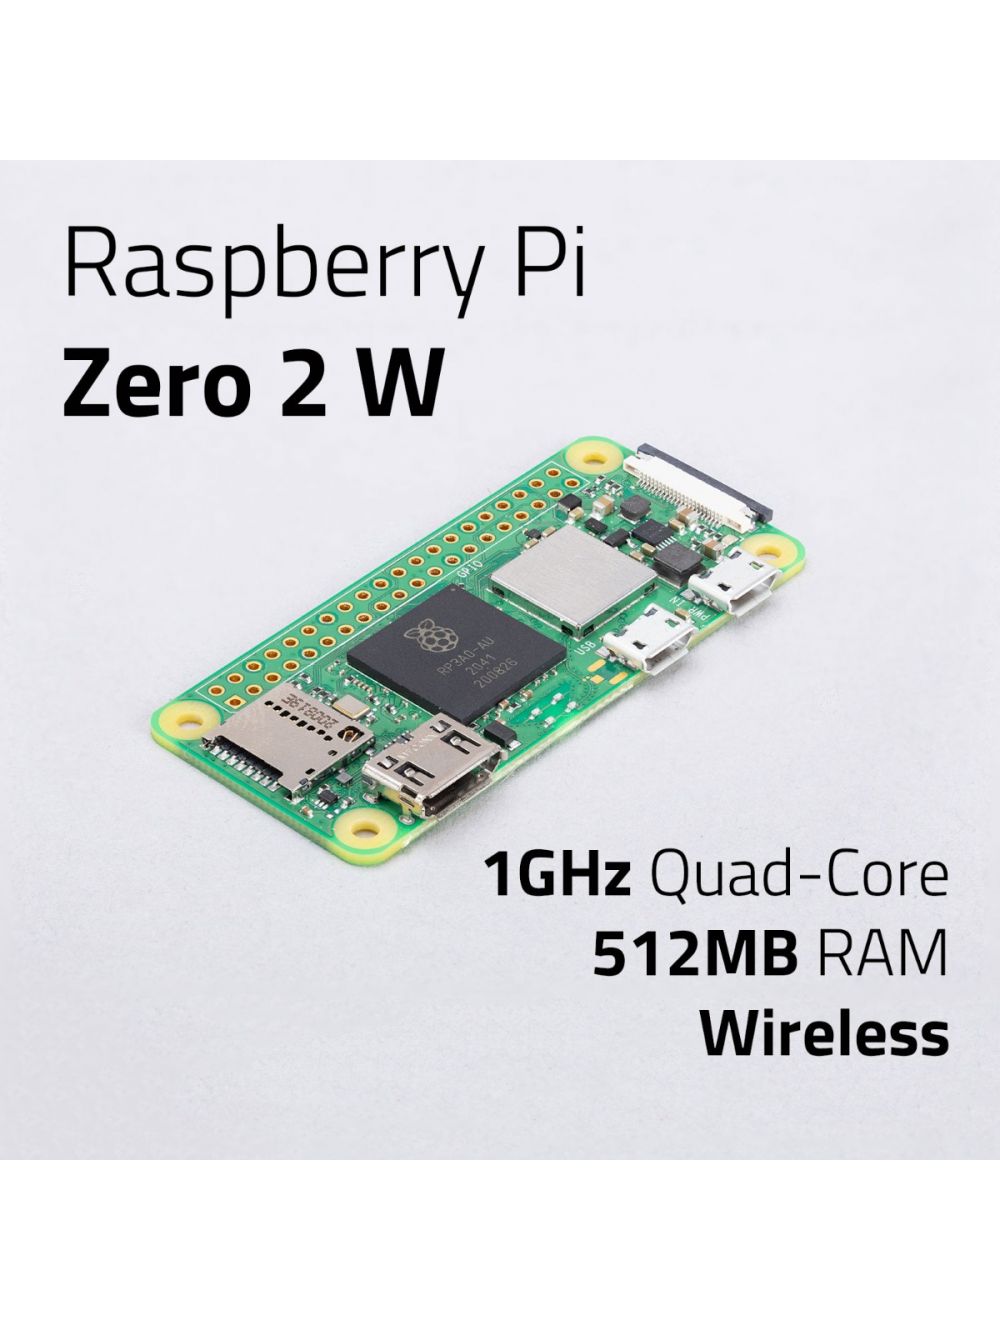 Raspberry Pi Zero W Budget Pack 